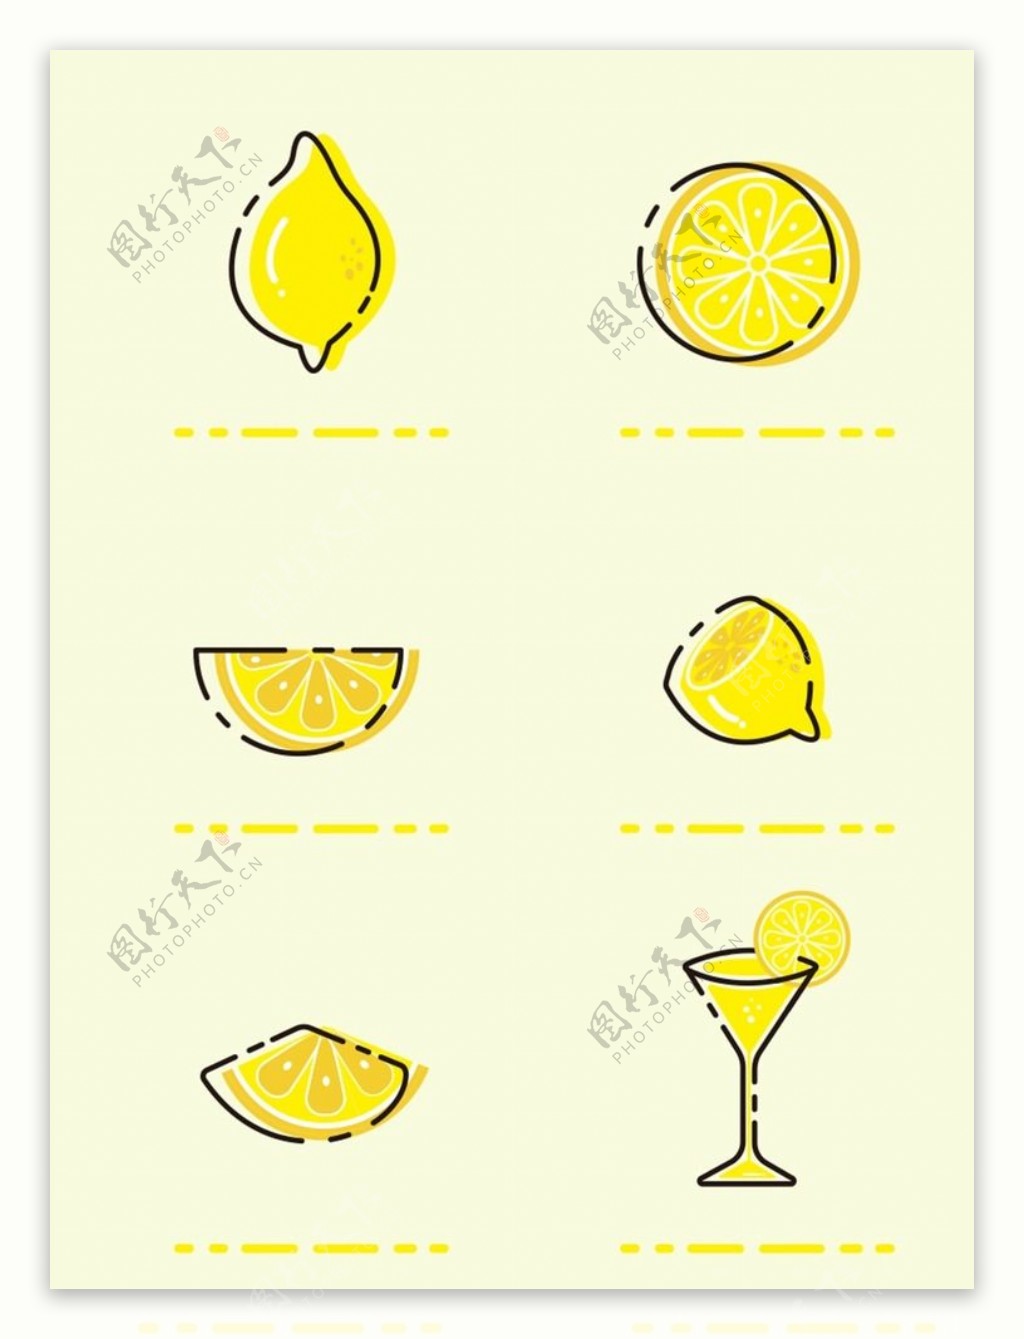 简约卡通MBE夏天柠檬元素设计